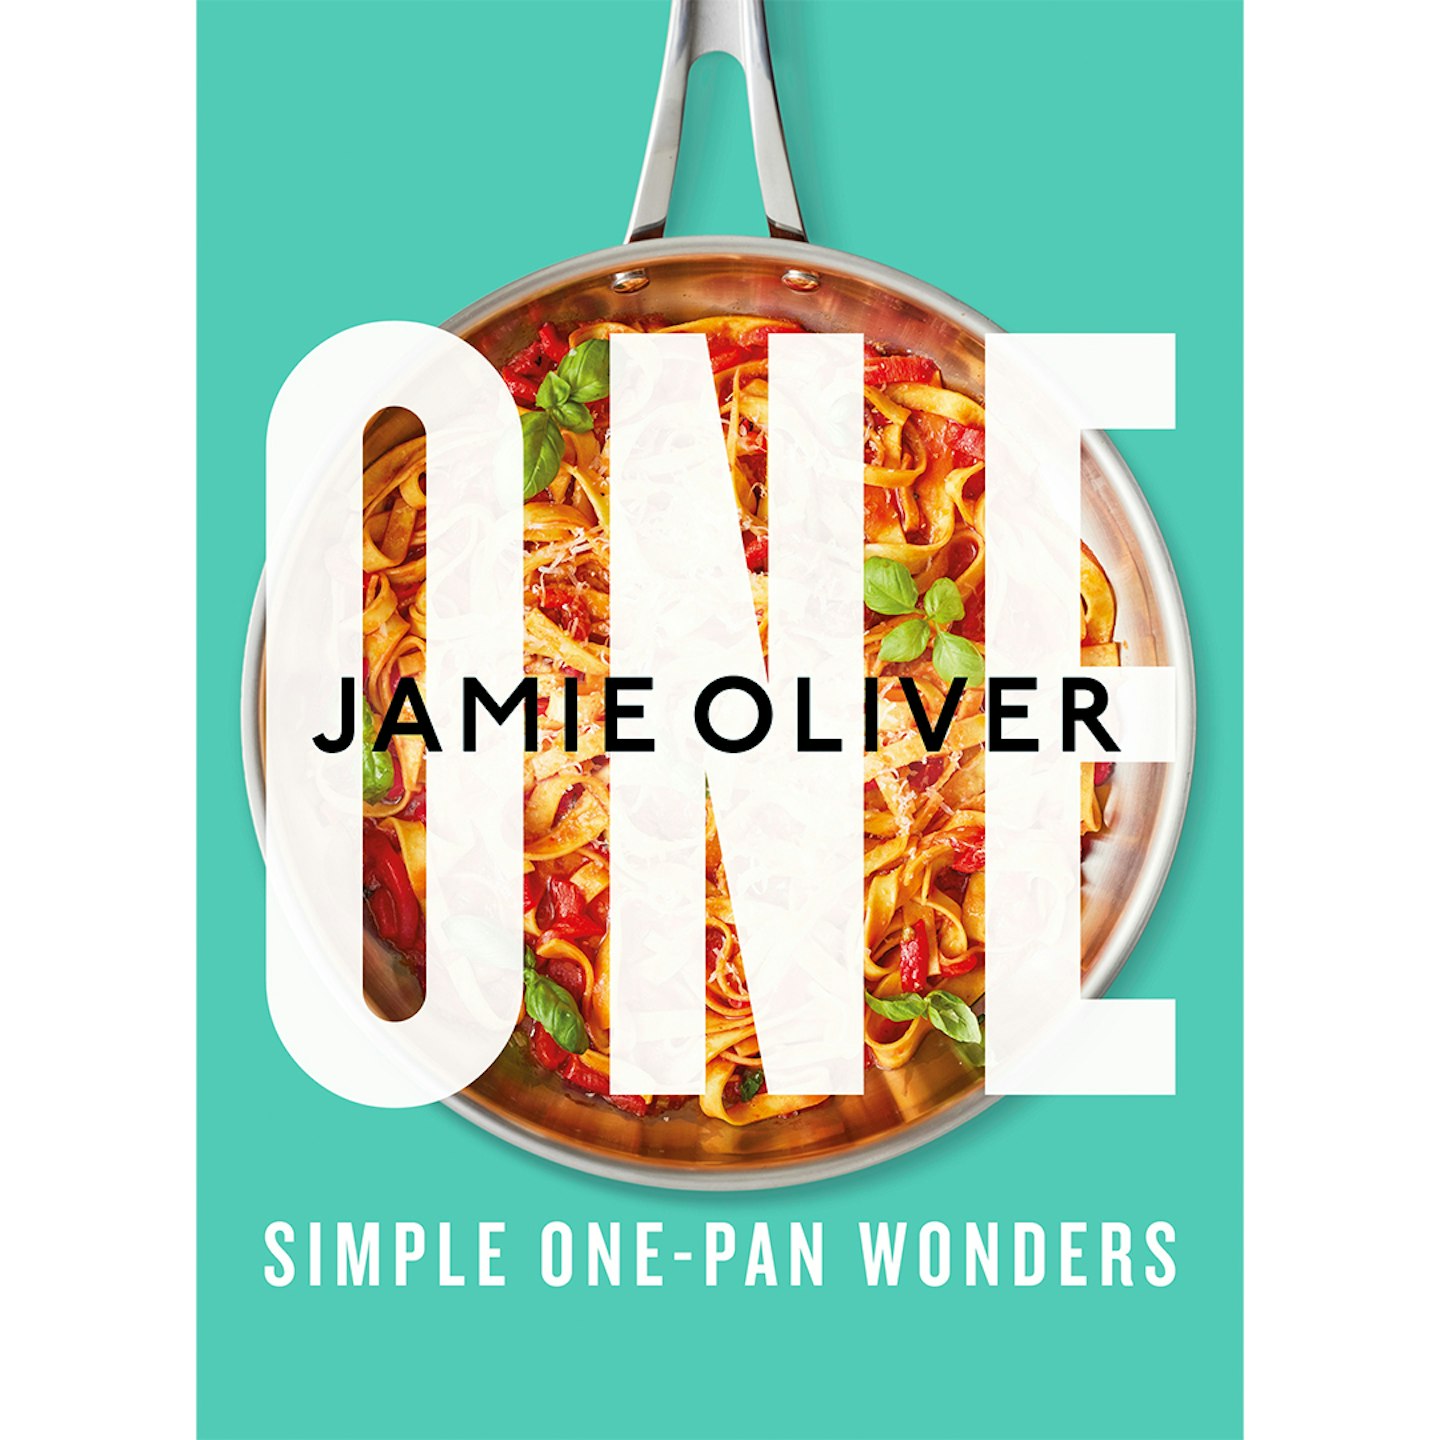 One: Simple One-Pan Wonders 